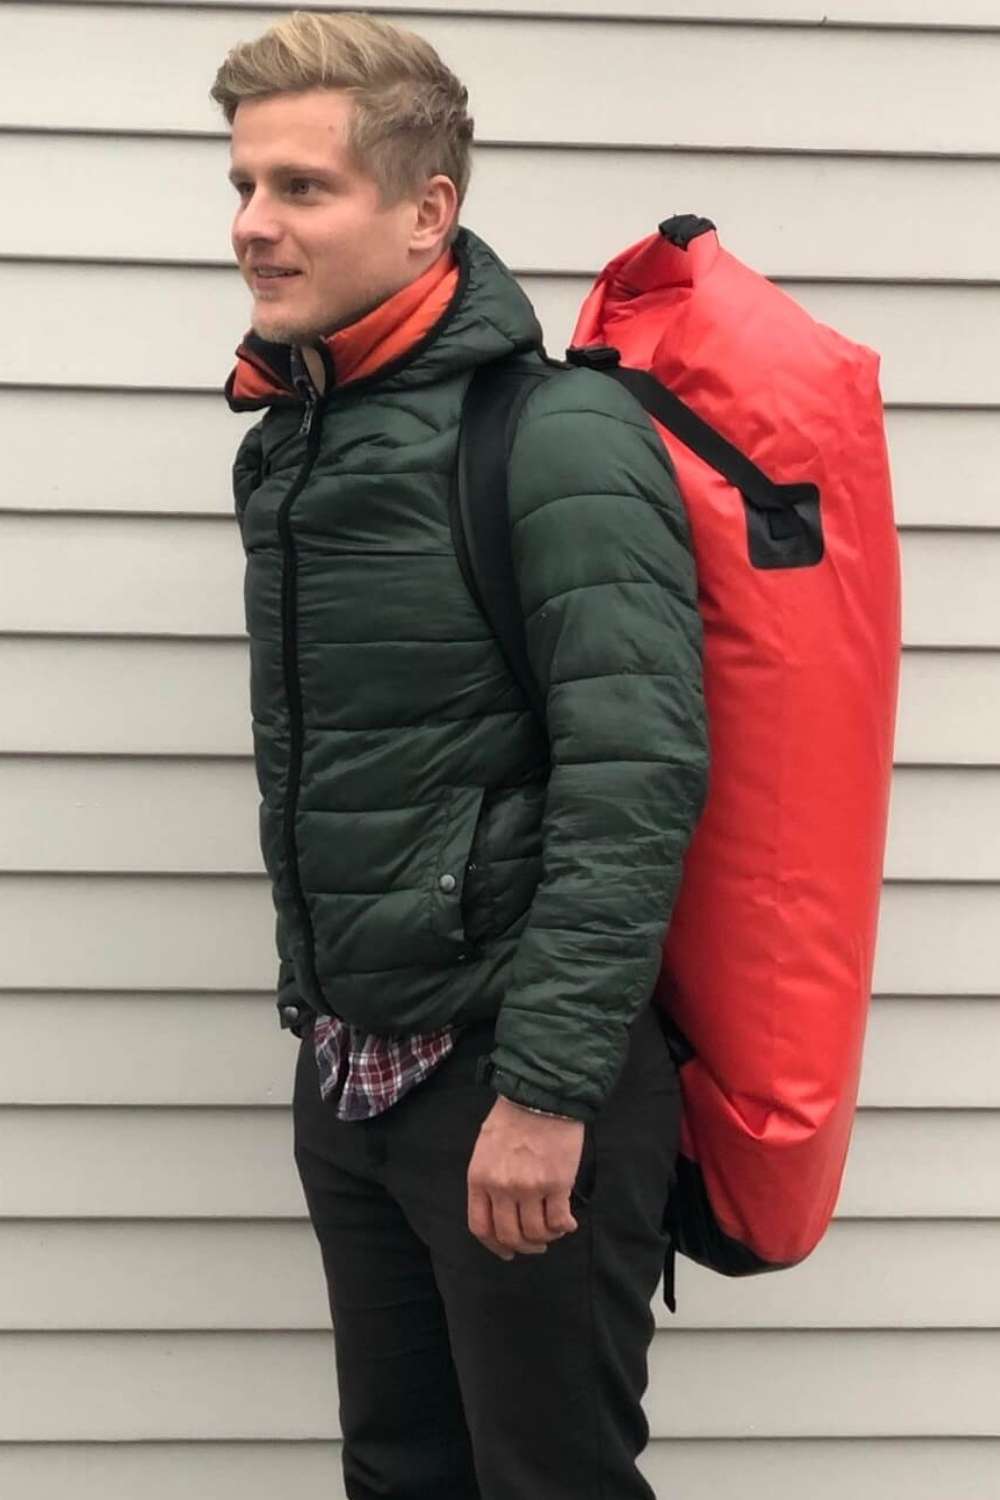 Vlitex Tragesack als Rucksack von einer Person getragen